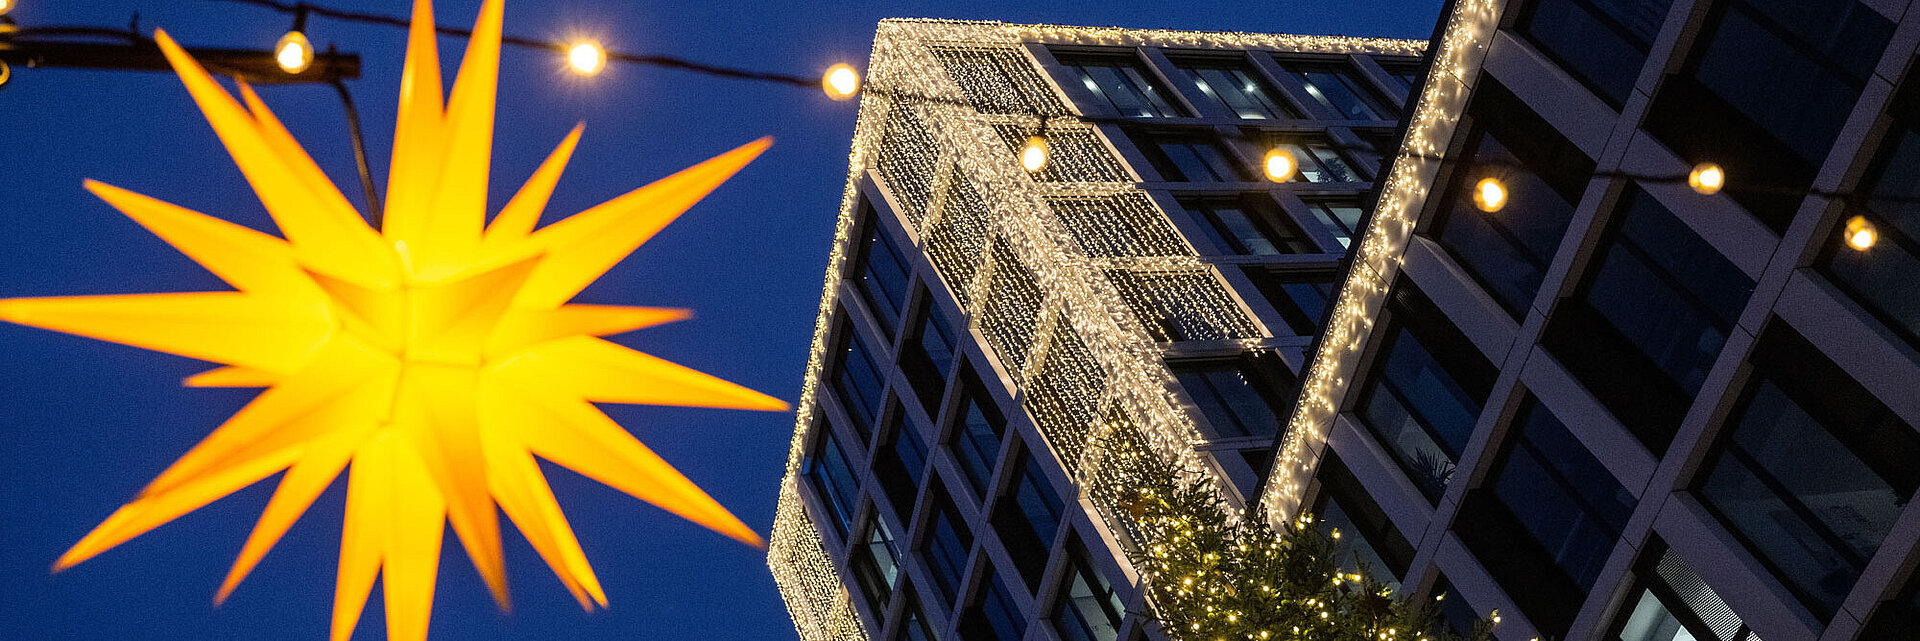 Gelber Herrnhuter Stern mit Blauen Bock mit Weihnachtsbeleuchtung im Hintergrund